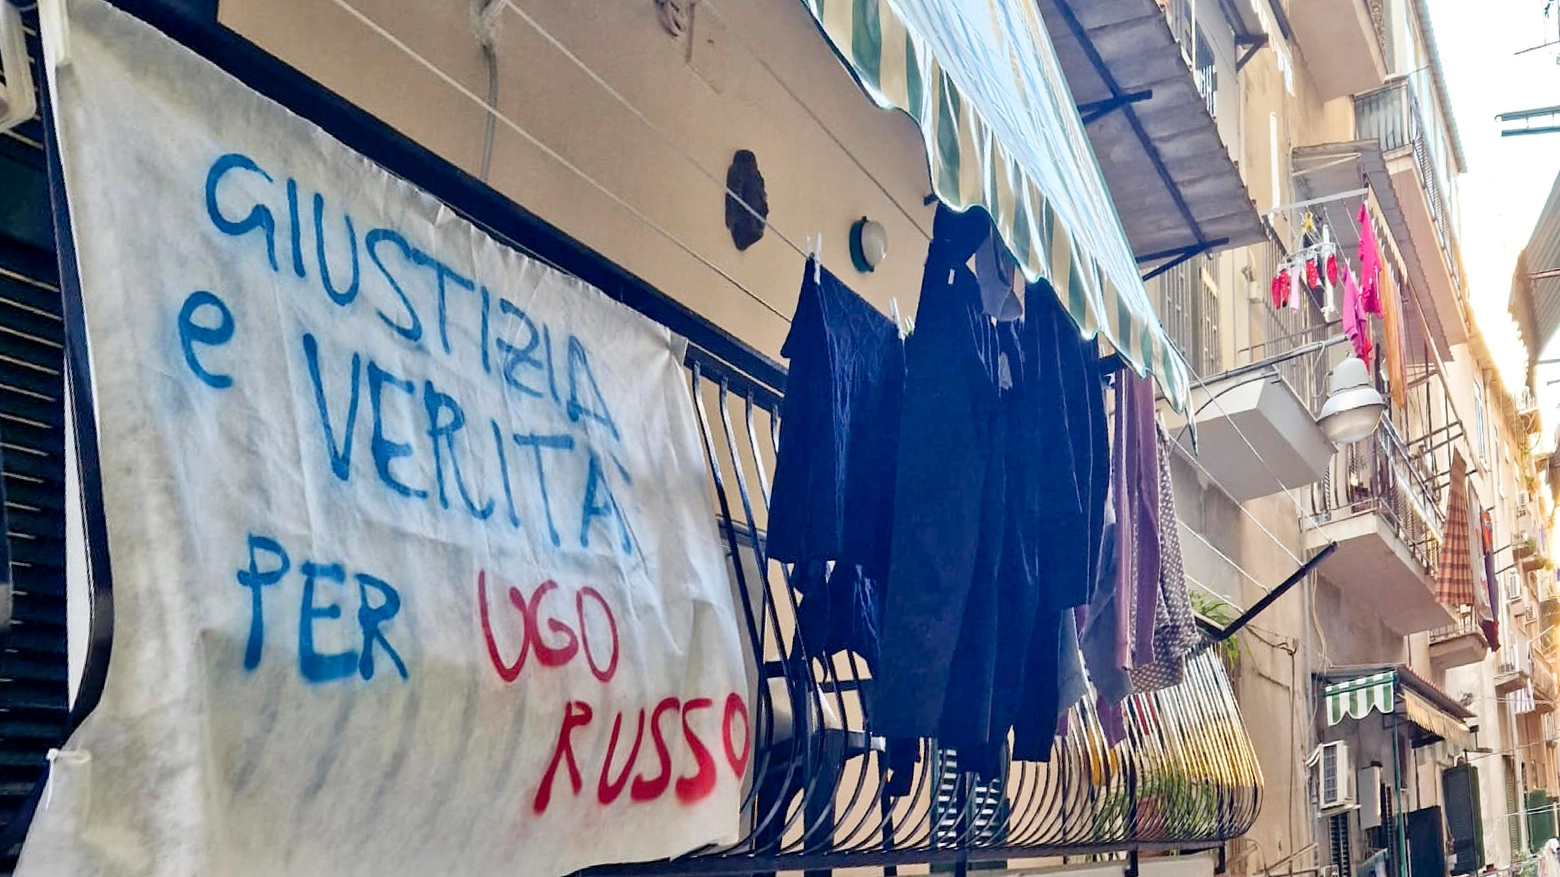 Napoli, sui balconi del rione Montesanto lenzuola con scritto ' Giustizia per Ugo Russo'